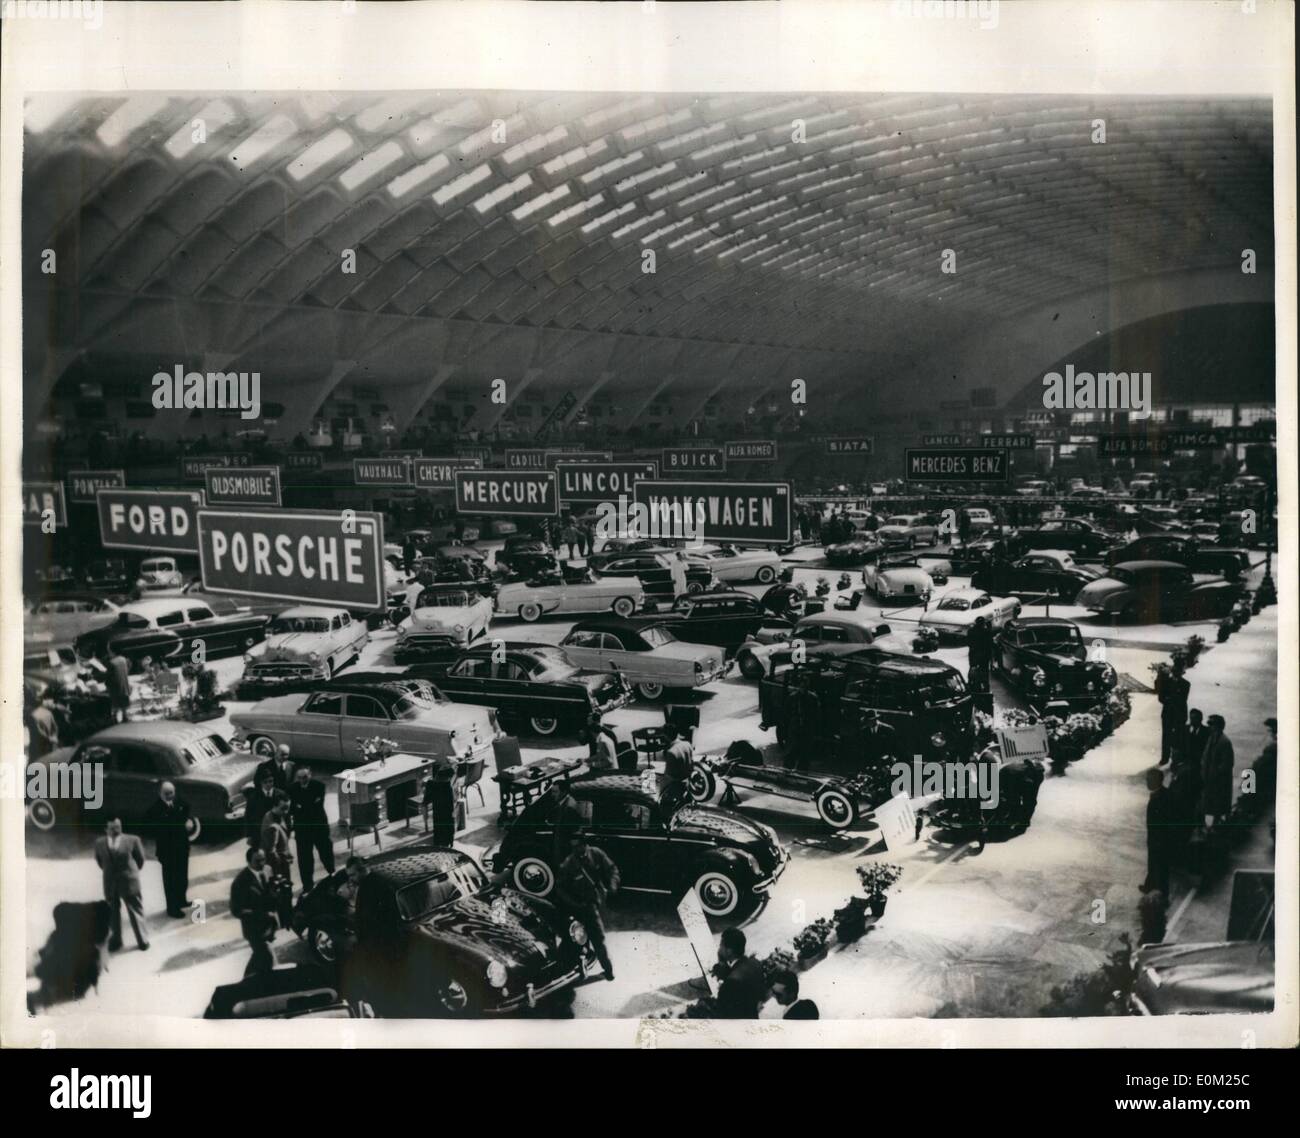 Apr. 04, 1953 - International Motor Show a Torino: foto mostra la vista generale del Motor Show che ha aperto recentemente a Torino, Italia. Molti stranieri e vetture italiane sono state esposte. Foto Stock